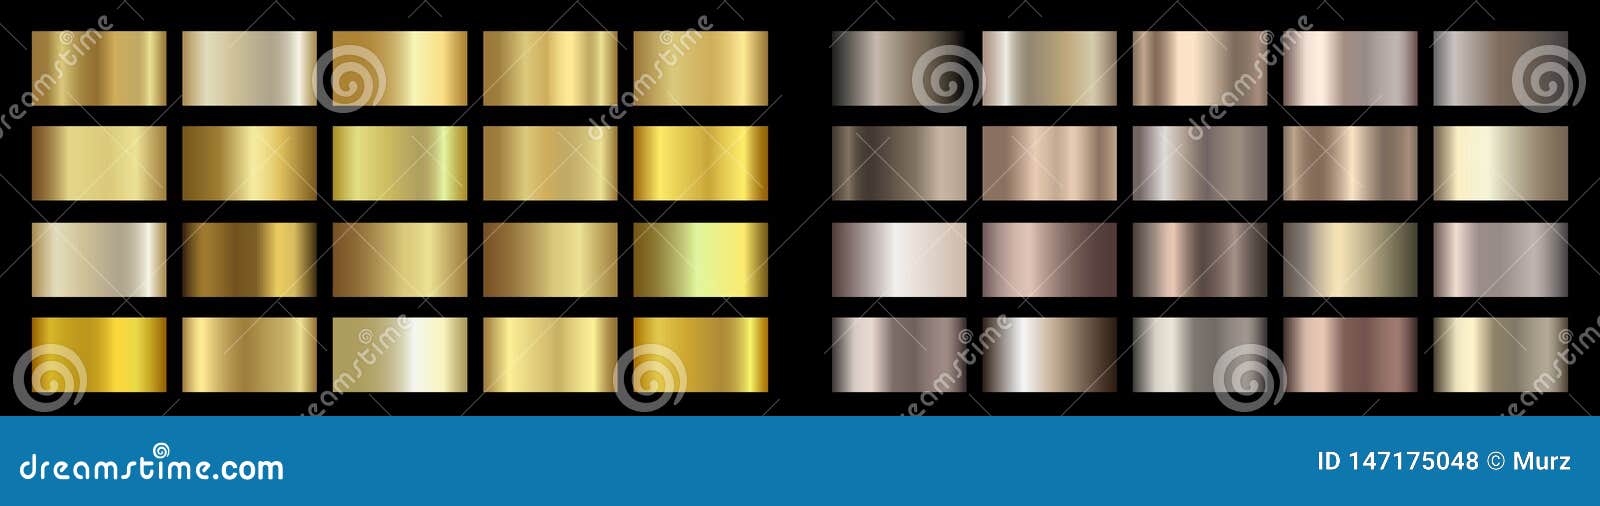 gold, bronze, golden, metallic, copper metal foil texture gradient template